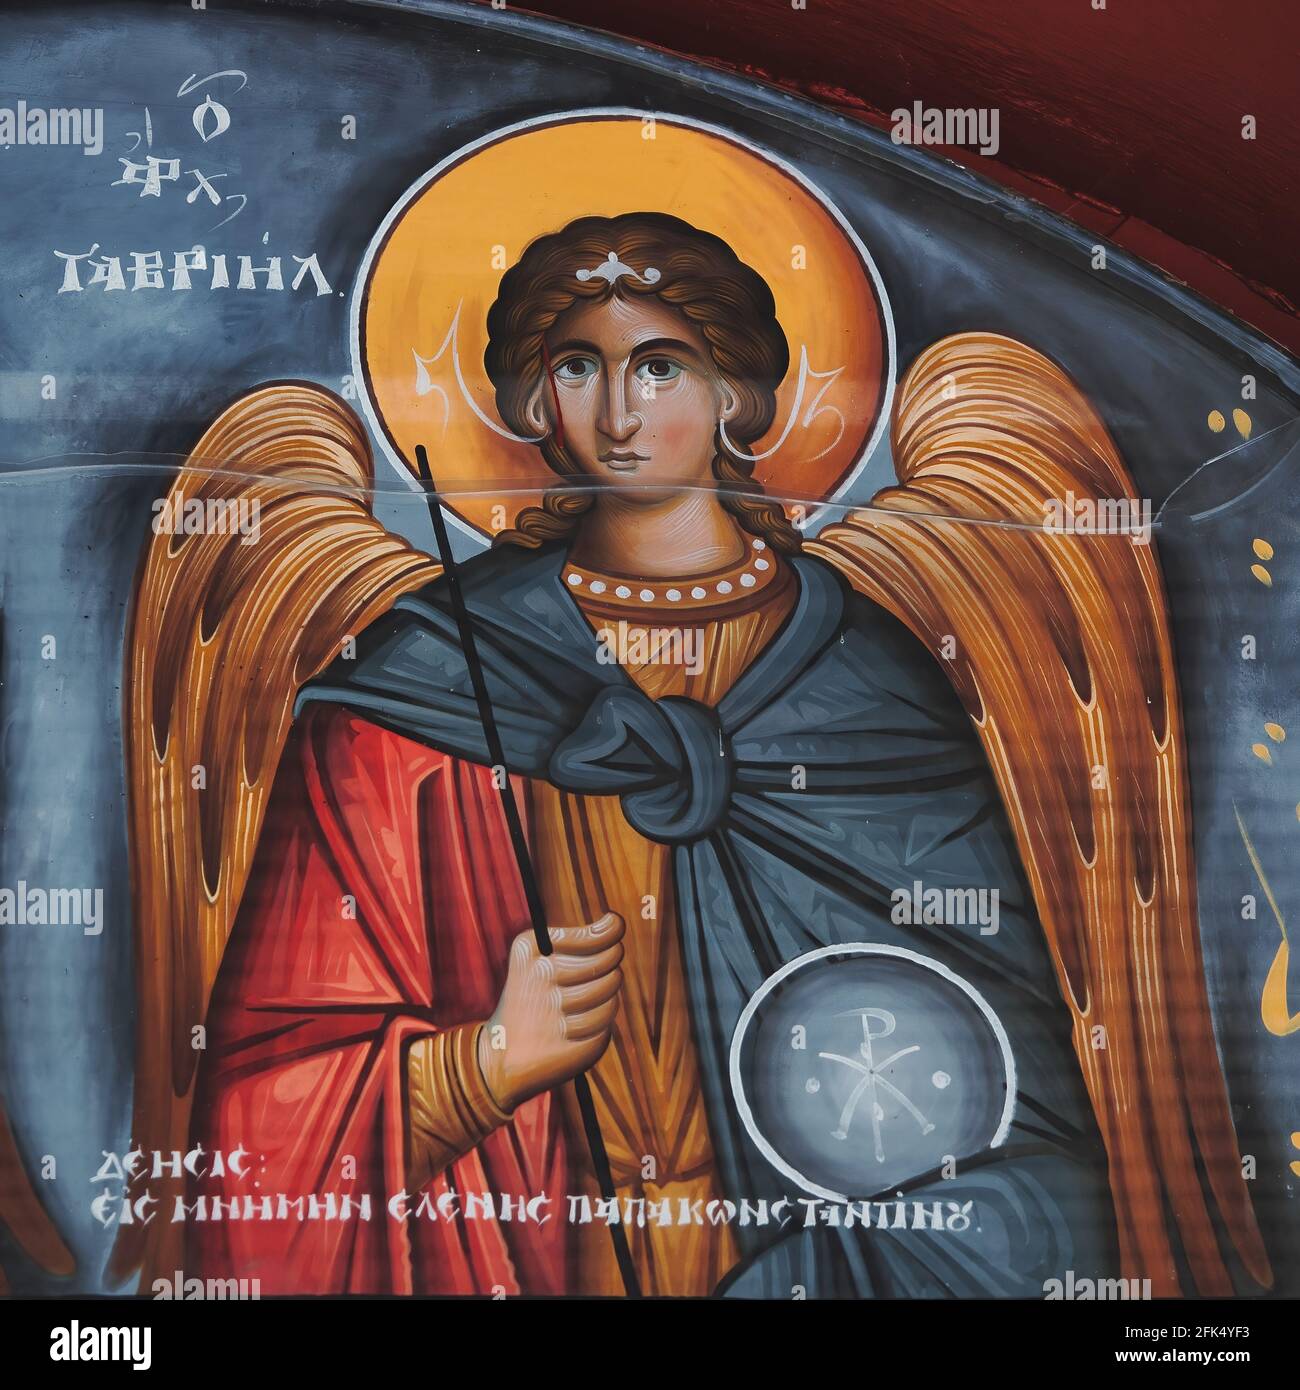 archangel gabriel symbol